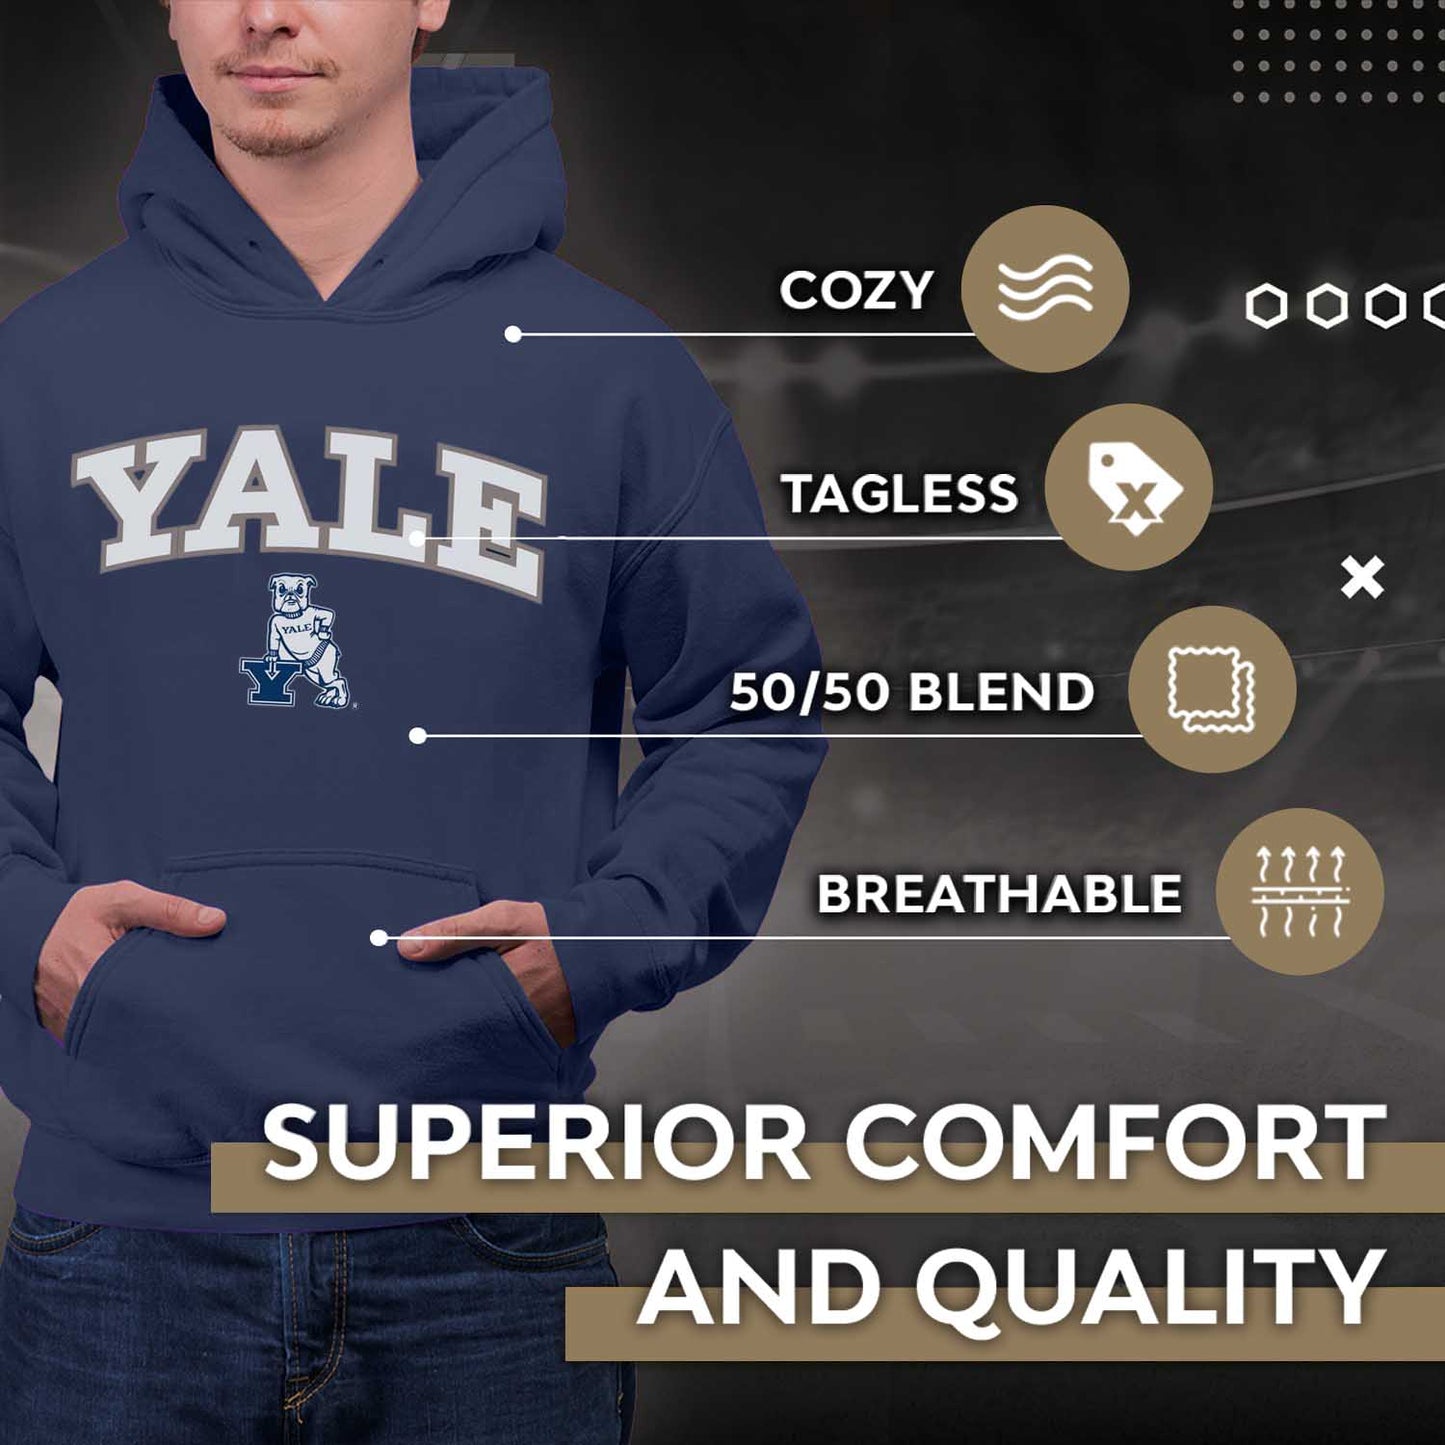 Yale Bulldogs NCAA Adult Tackle Twill Hooded Sweatshirt - Navy